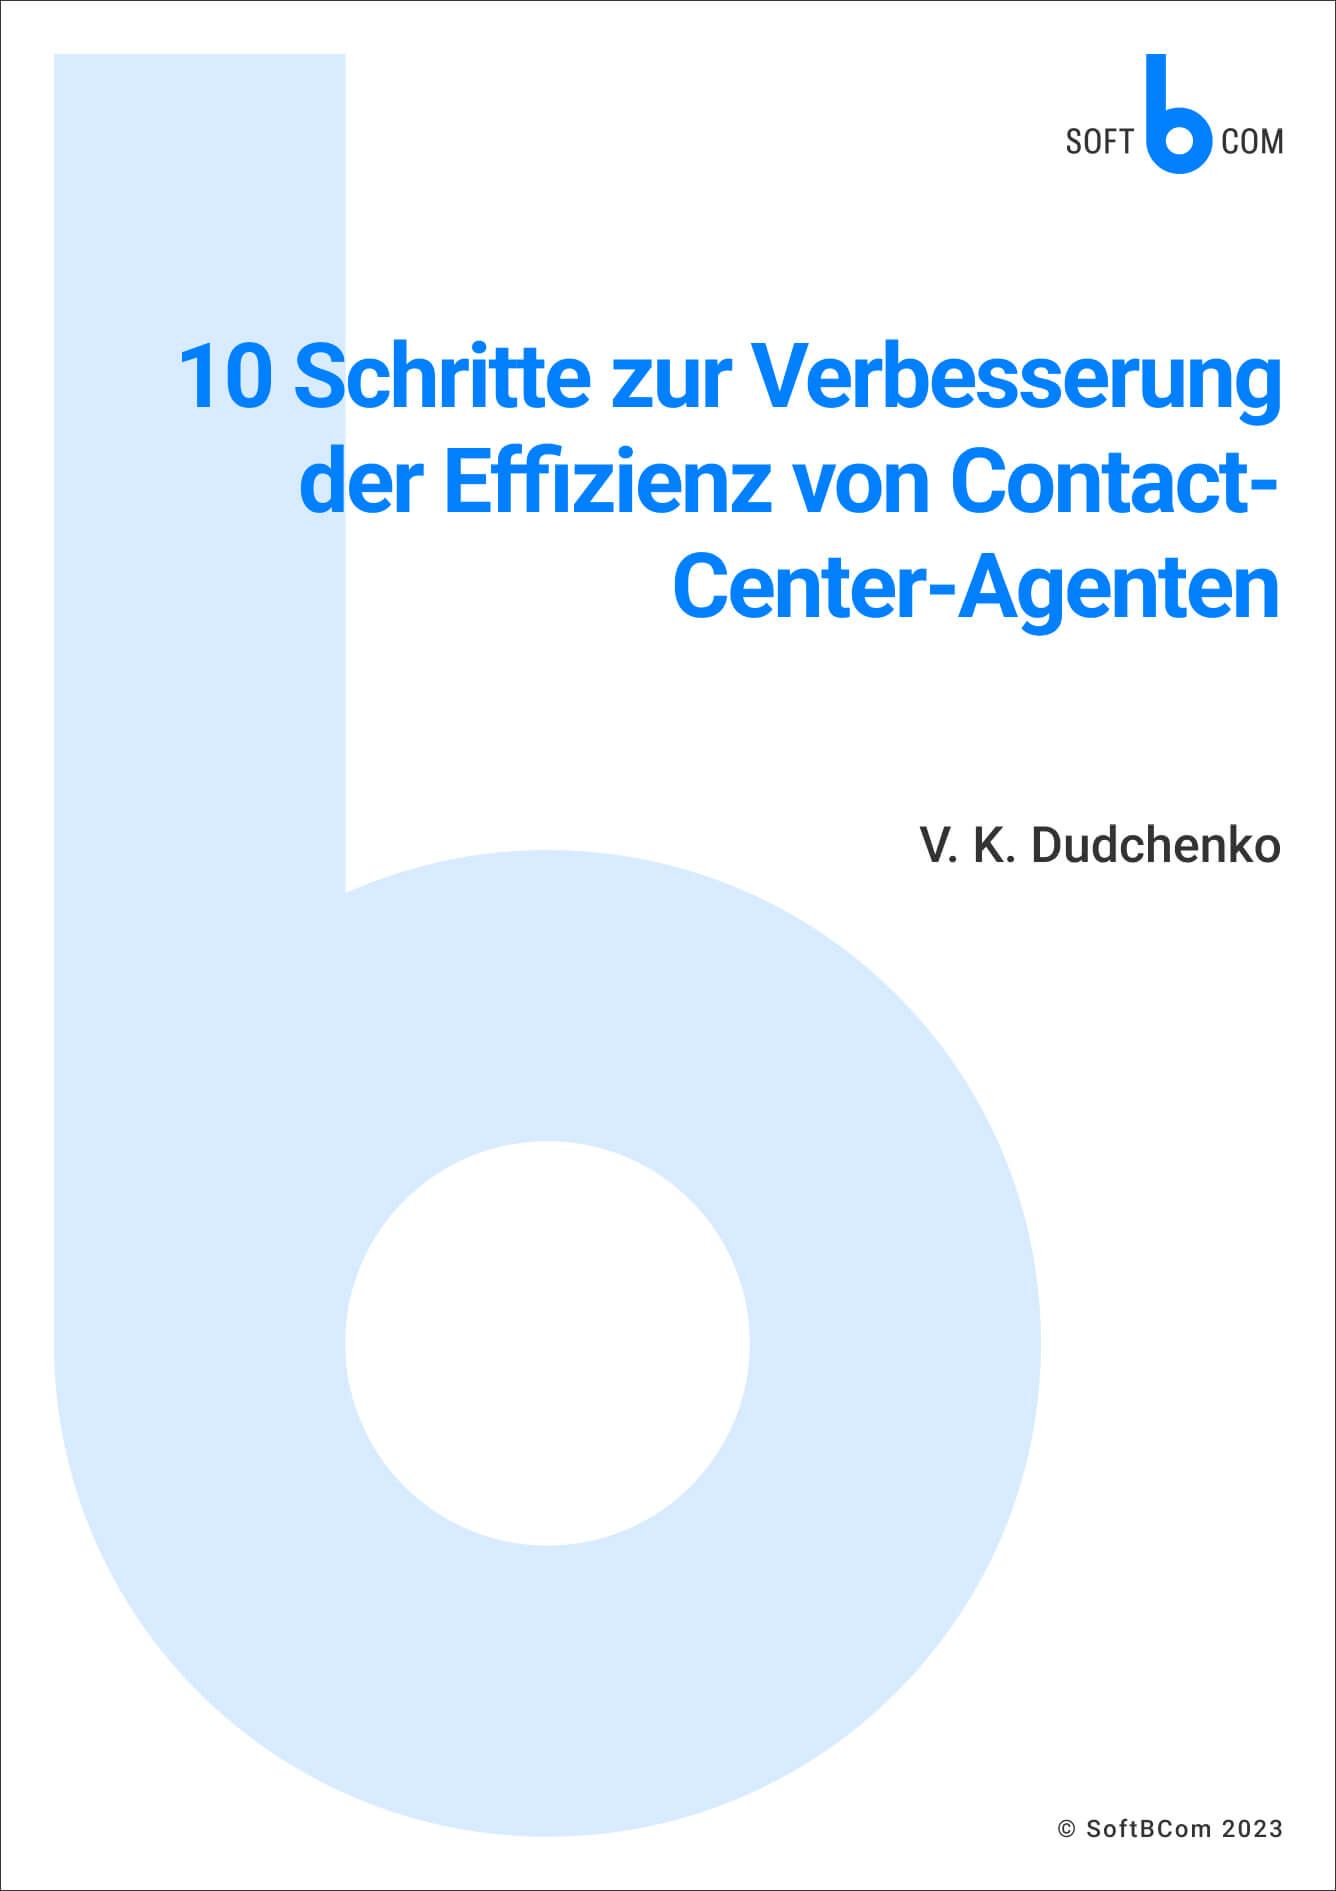 10 Schritte zur Verbesserung der Effizienz von Contact-Center-Agenten